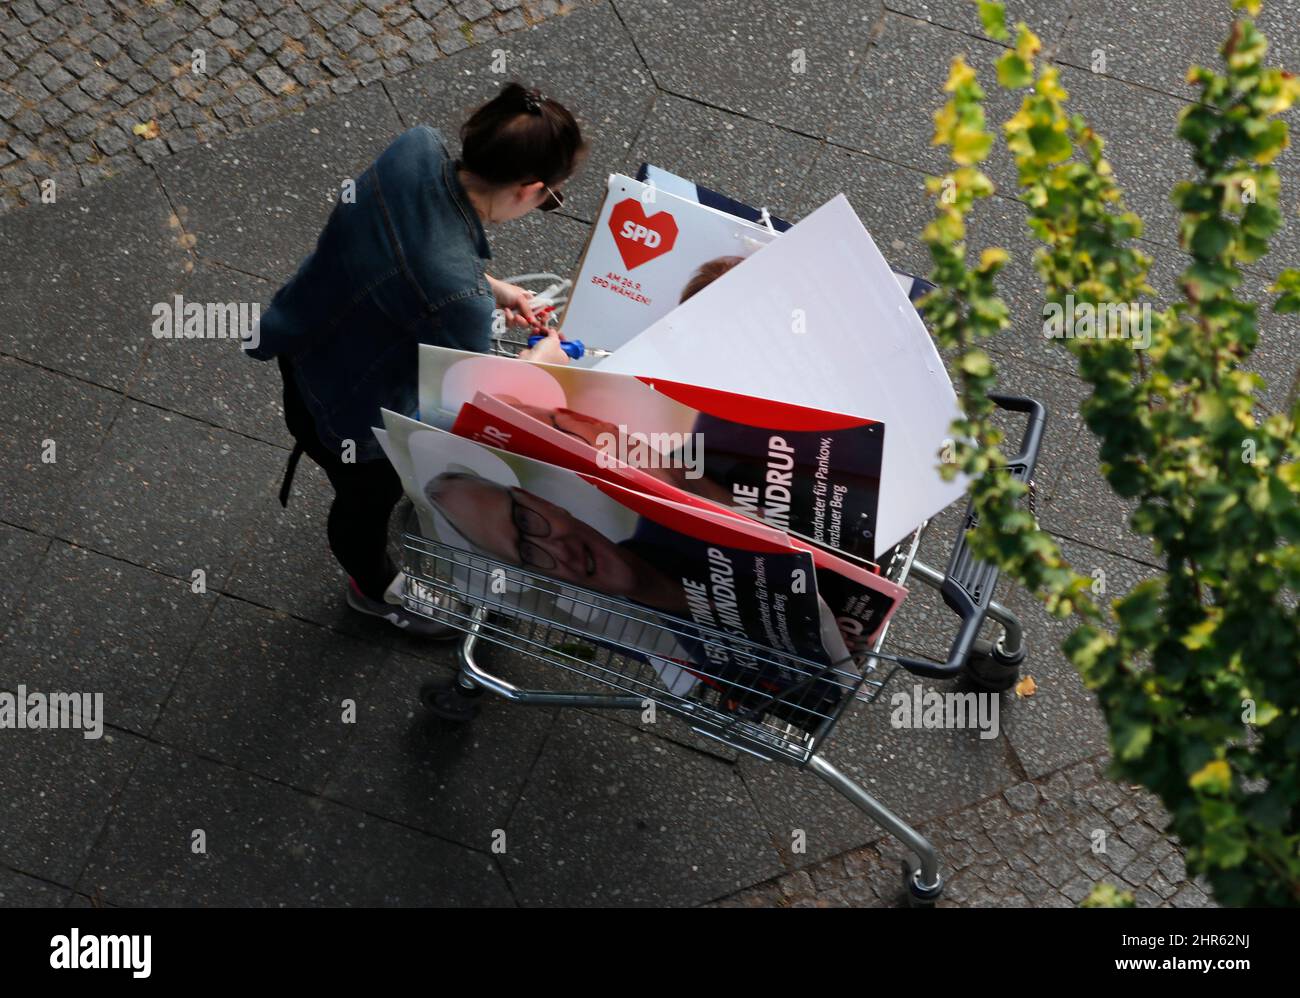 Helfer sammeln SPD-Wahlplakate nach Bundestagswahlen ein, Berlín (nur fuer redaktionelle Verwendung. Keine Werbung. Referenzdatenbank: http://www.360- Foto de stock